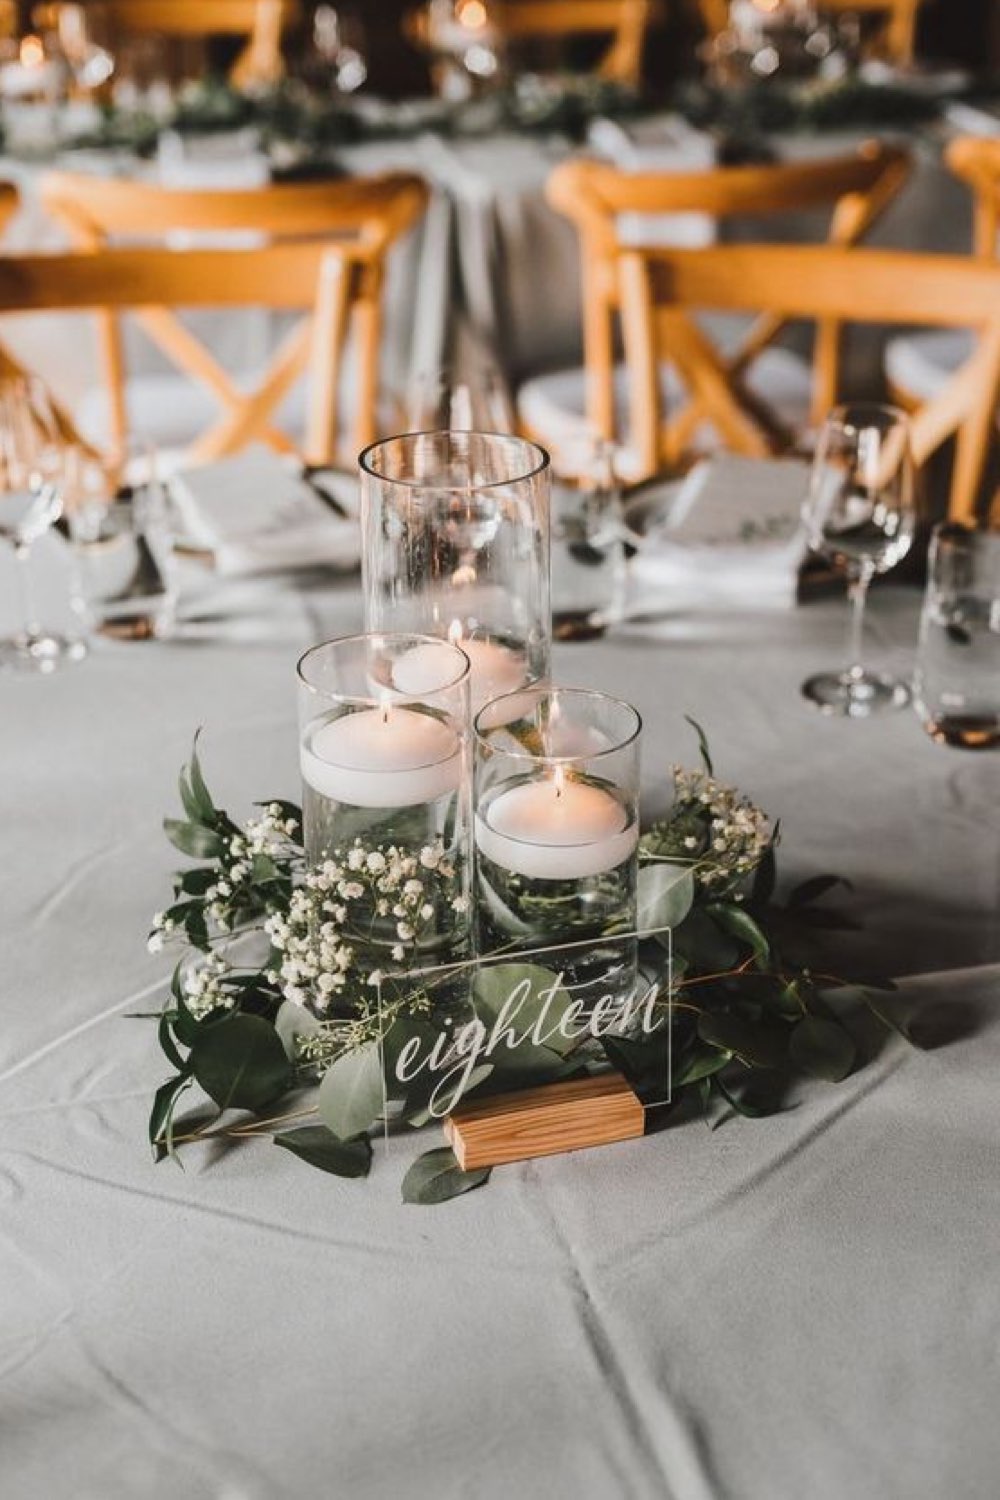 decoration mariage feerie hiver centre de table transparence vase bougies flottante eucalyptus